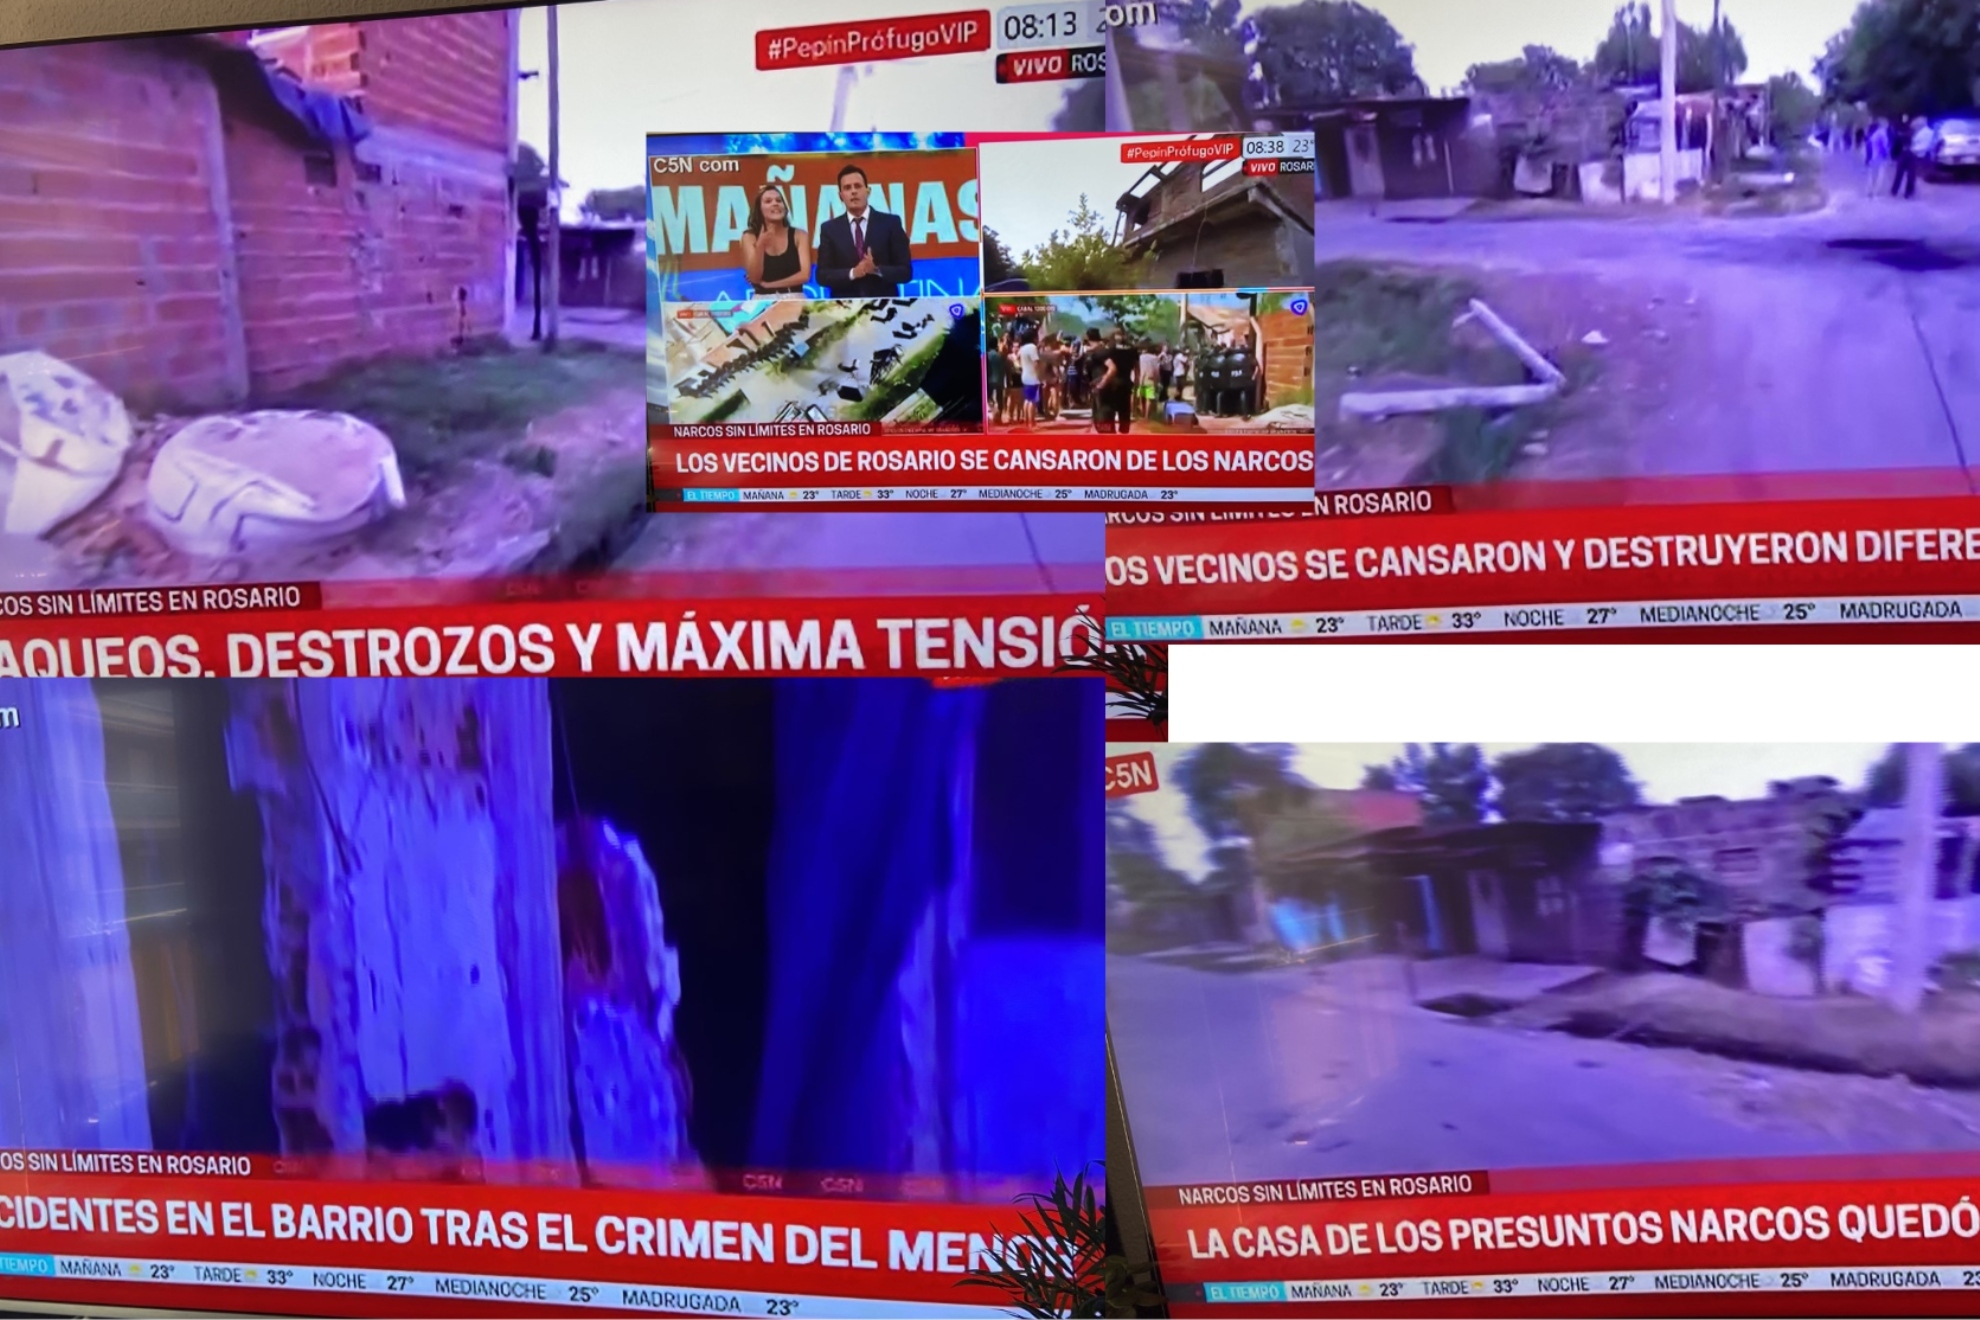 Imágenes sobre la situación en la ciudad de Rosario tomadas de un noticiero argentino.